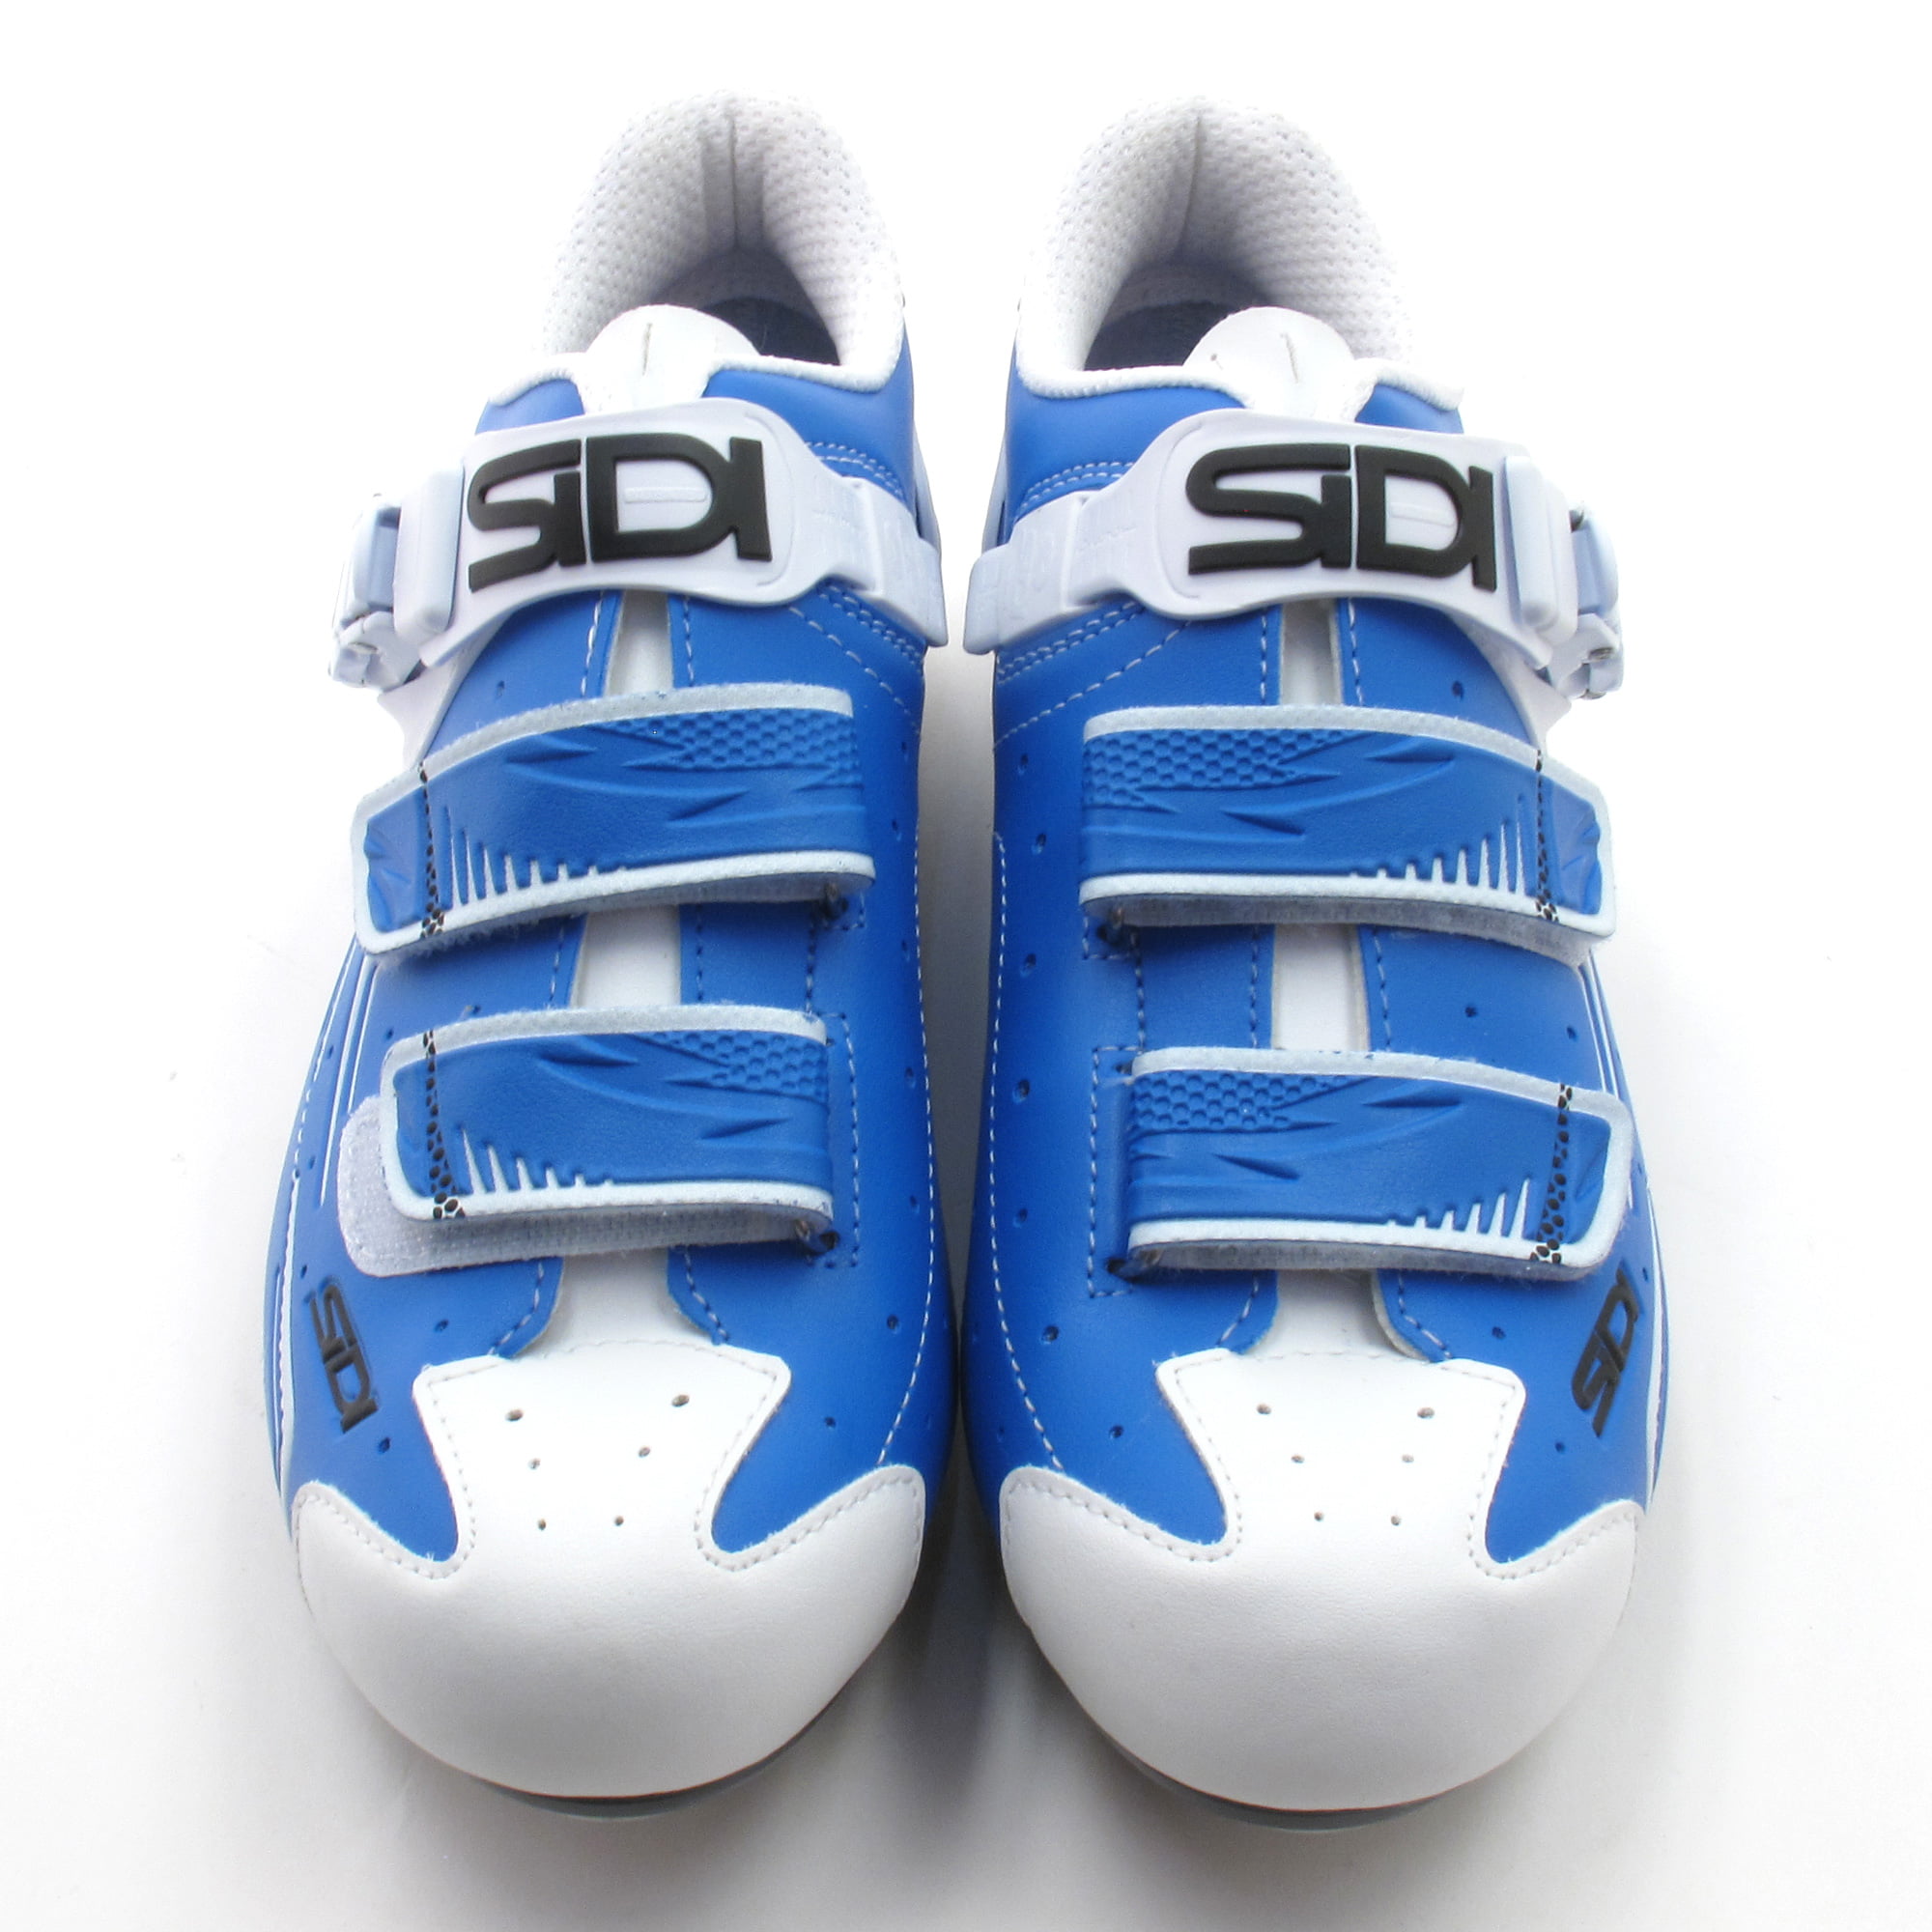 Sidi Buvel Blue / White Mountain Bike Cycling Shoes SPD // EUR 42 